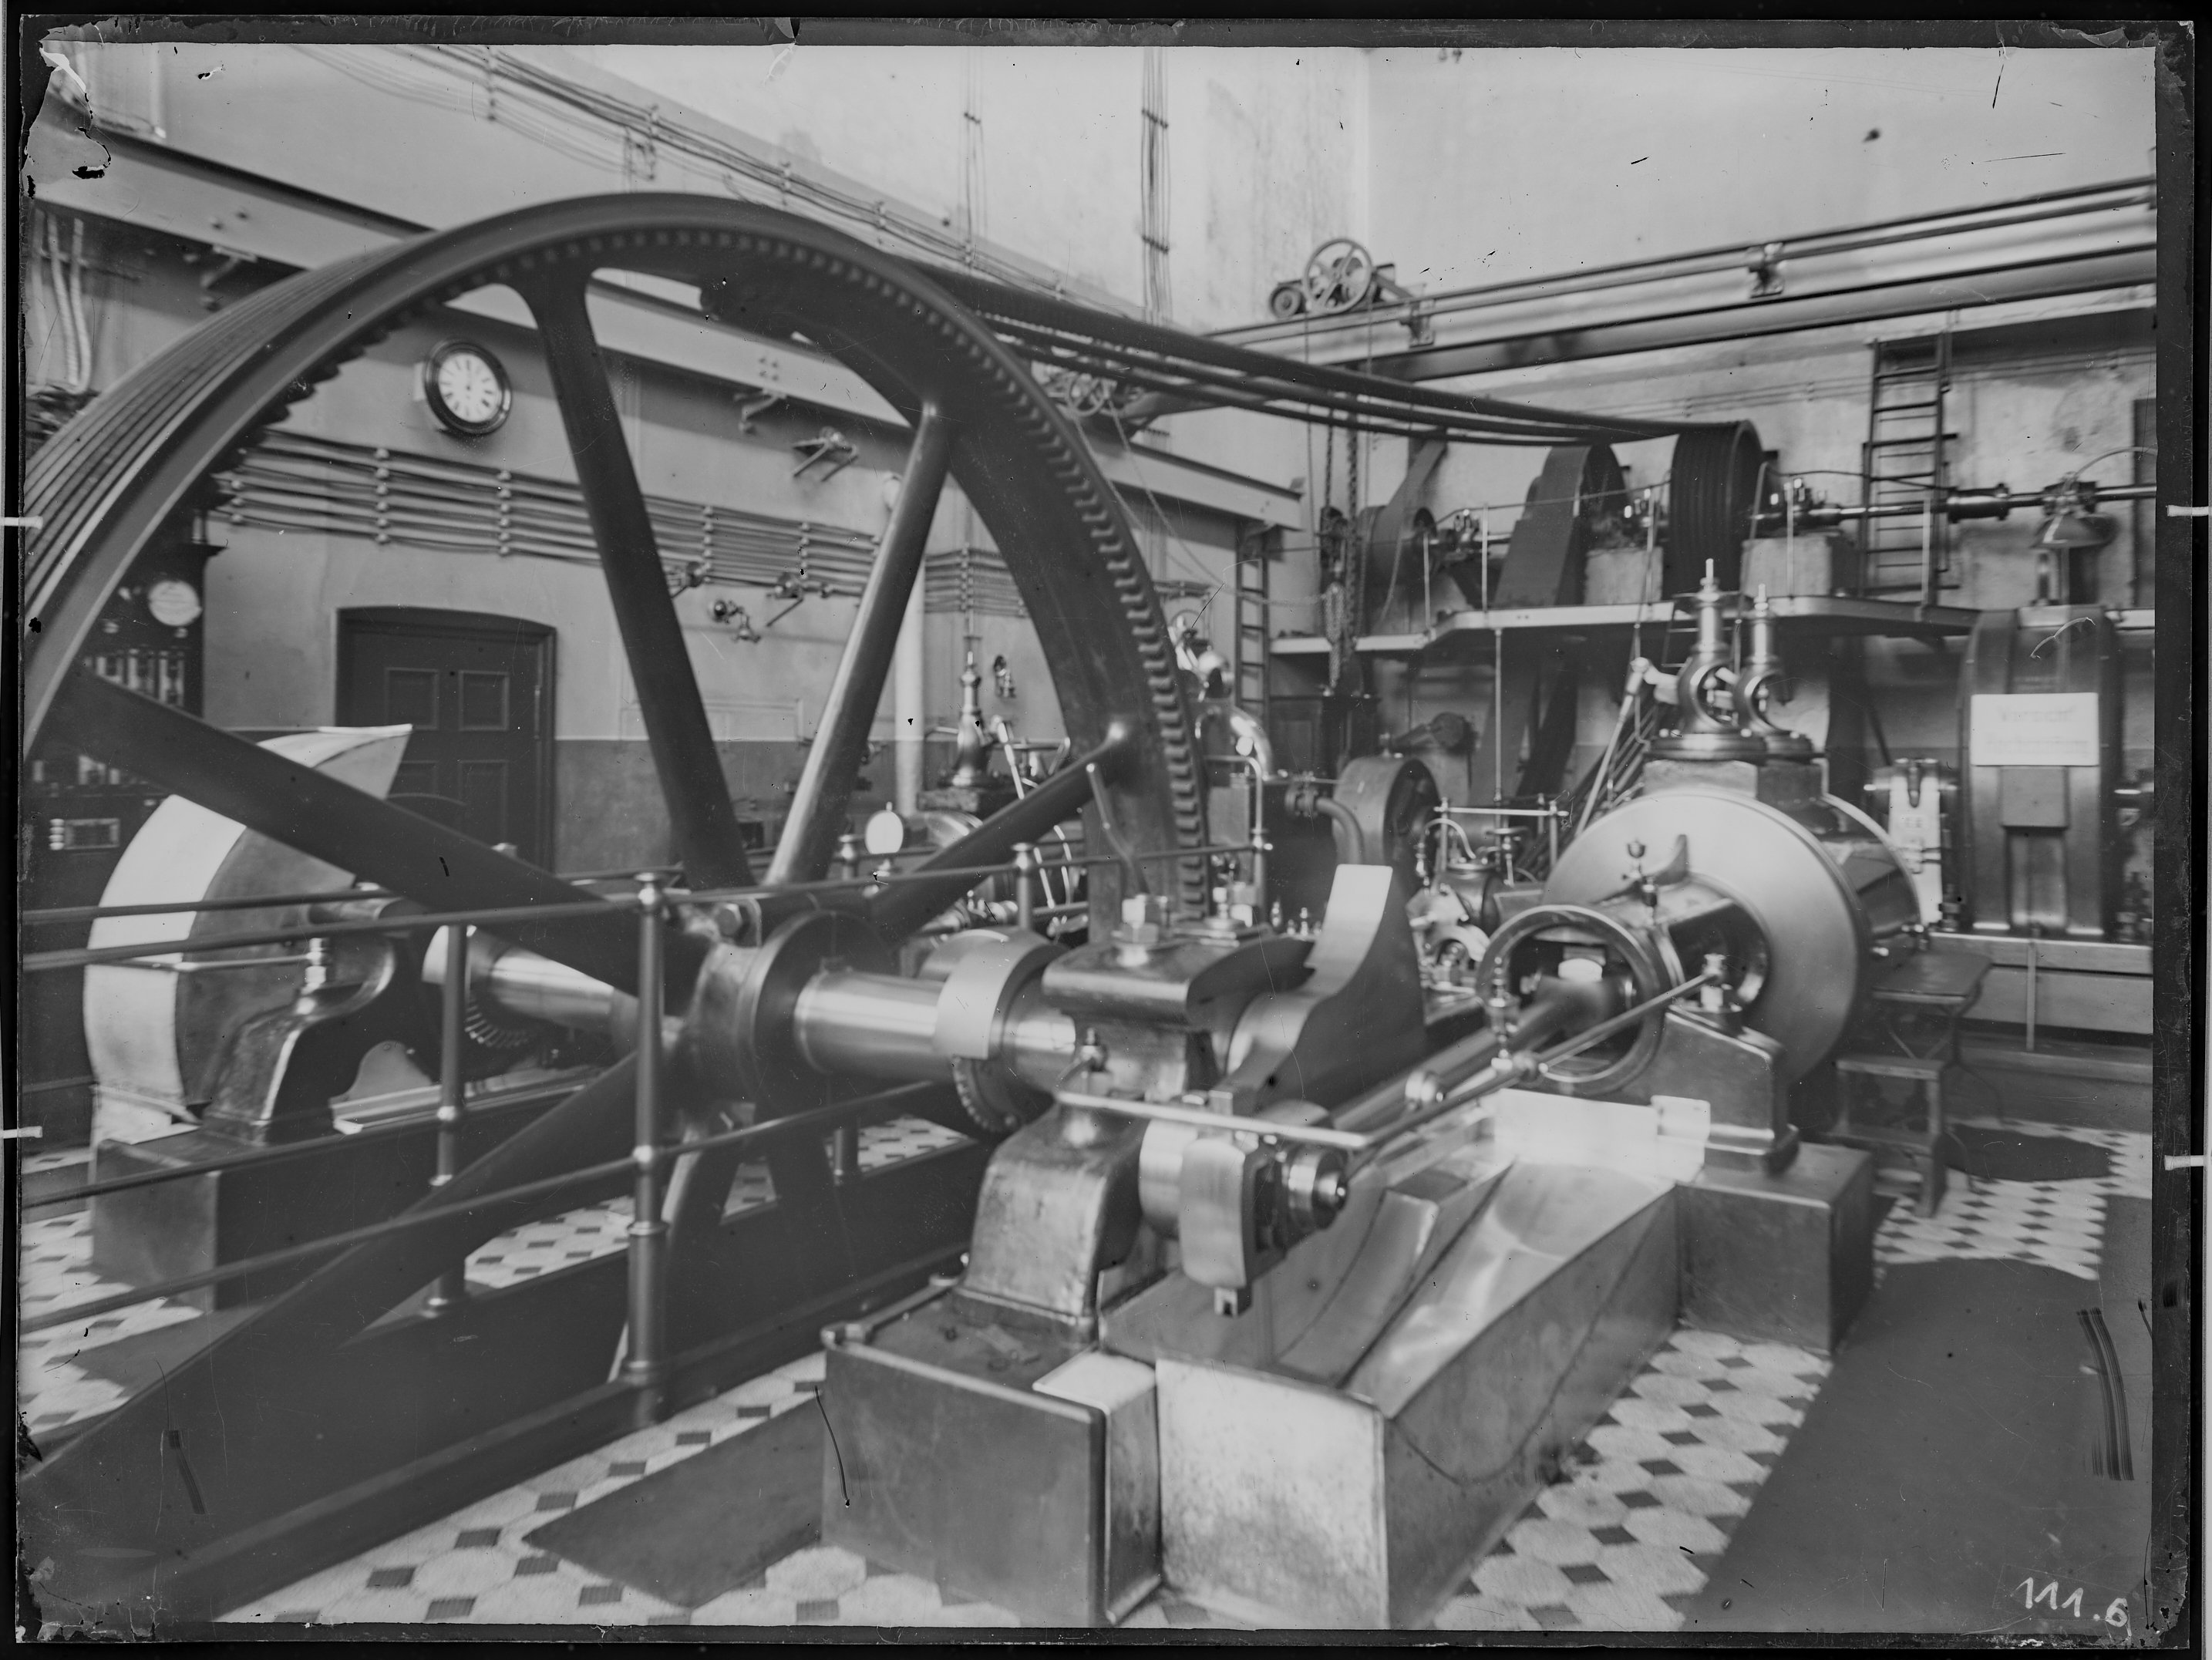 Fotografie: Waggon- und Maschinenbau AG Görlitz oder Vorgängerfirmen, Werkhalle (Innenansicht), Maschine, um 1905? (Verkehrsmuseum Dresden CC BY-NC-SA)